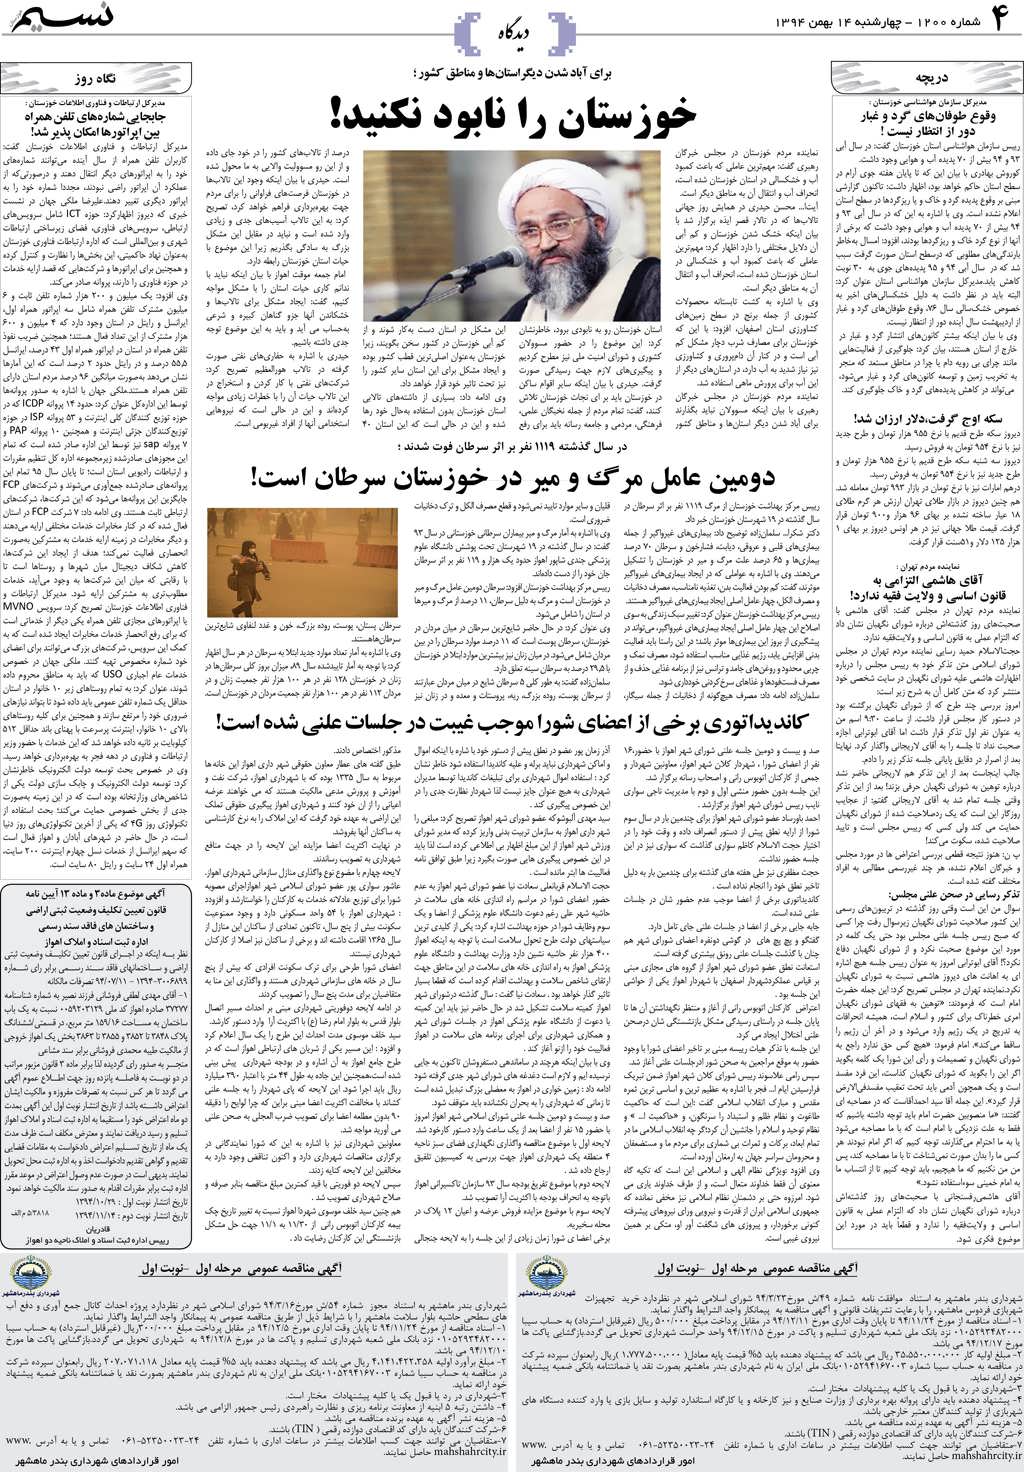 صفحه دیدگاه روزنامه نسیم شماره 1200